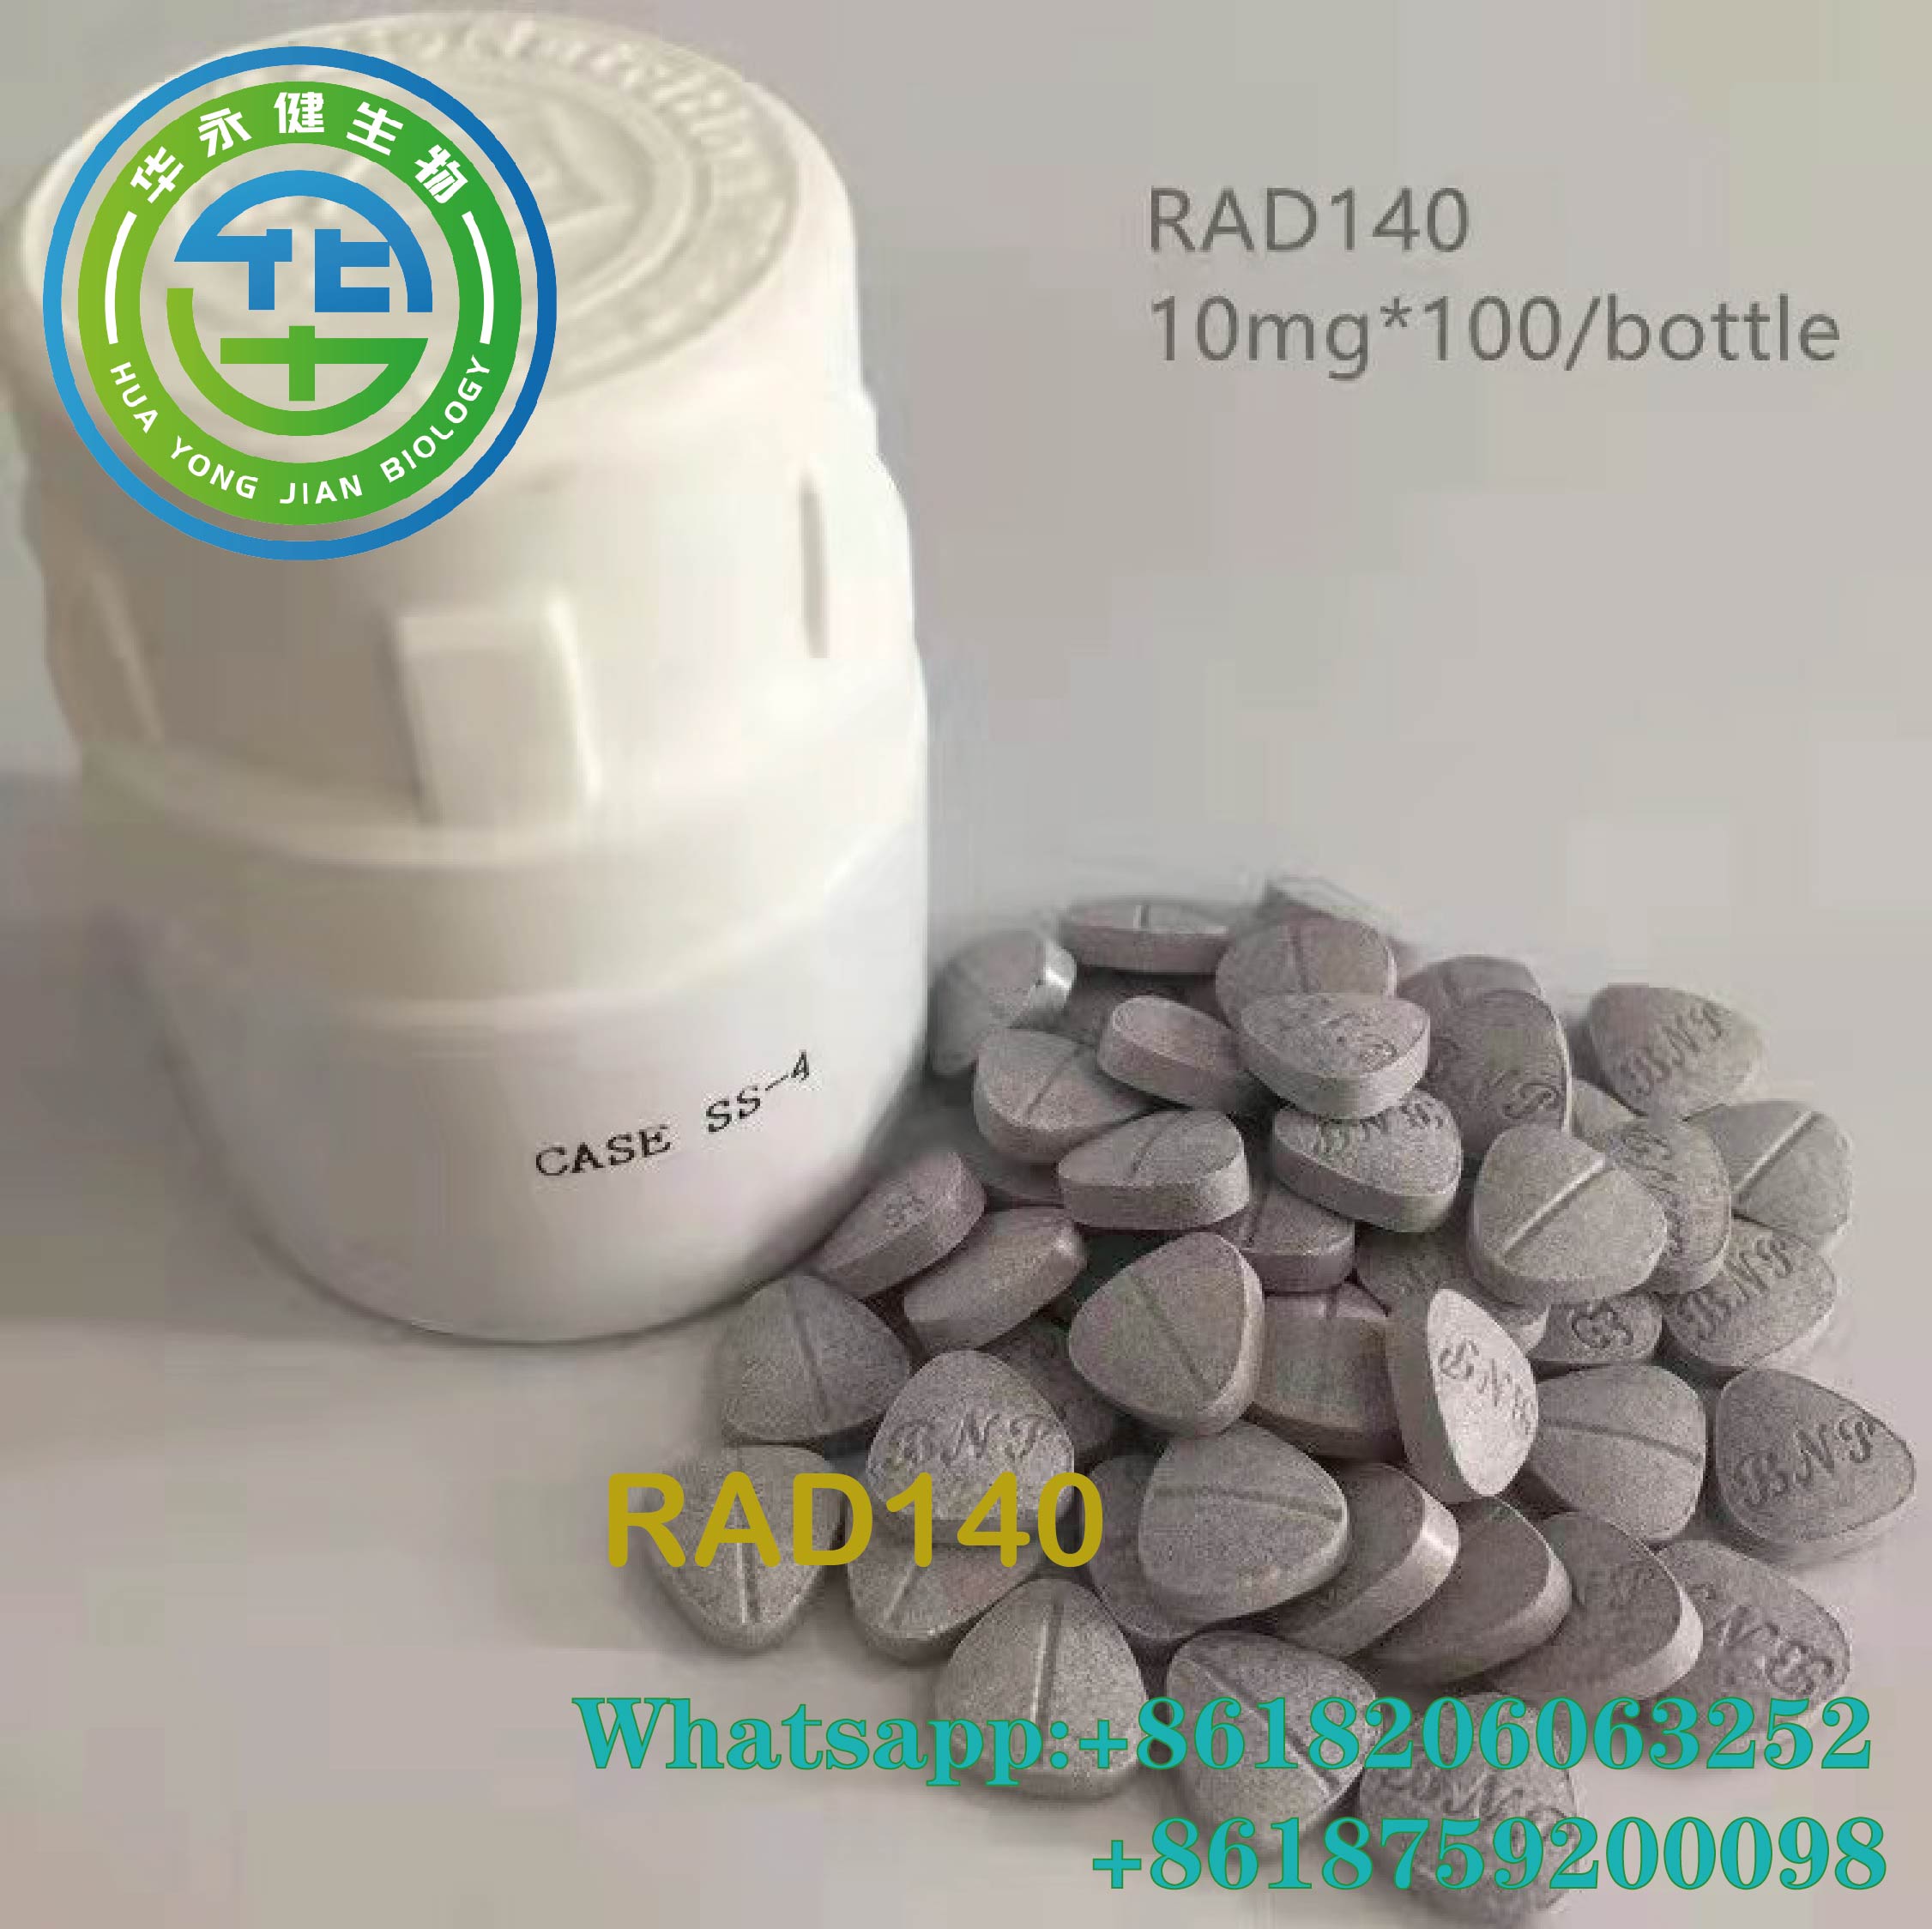 Oral Anabolic Testolone 10mg*100/shishe Tableta Steroids Sarms Raw Powder RAD140 tableta